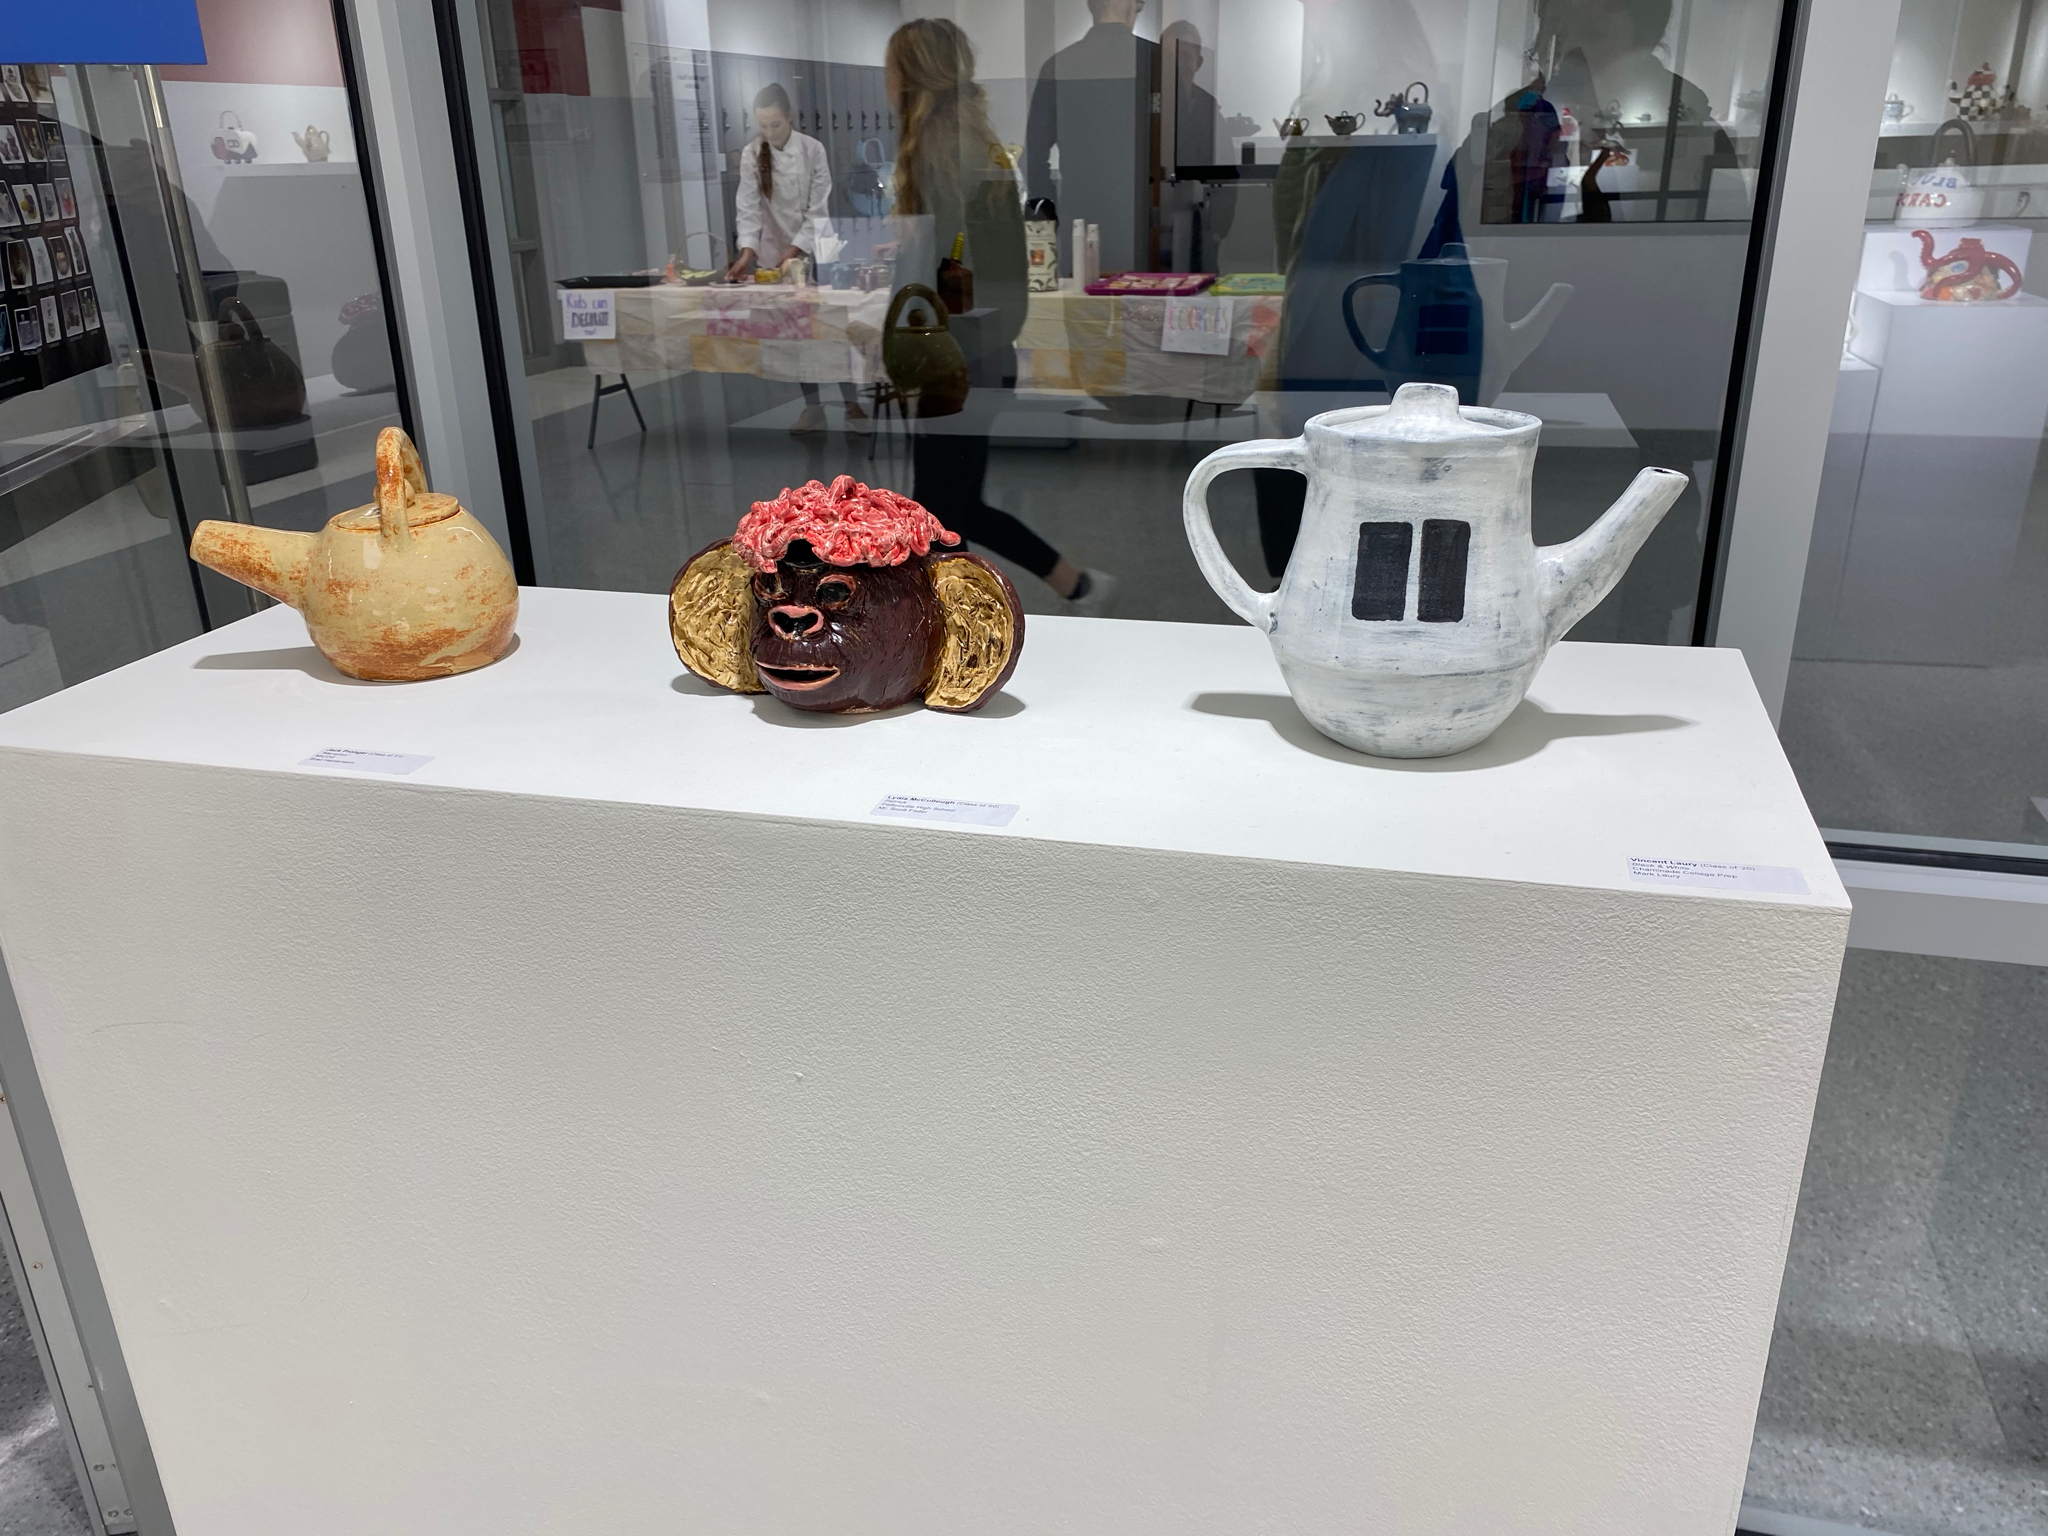 High School Teapot Exhibit